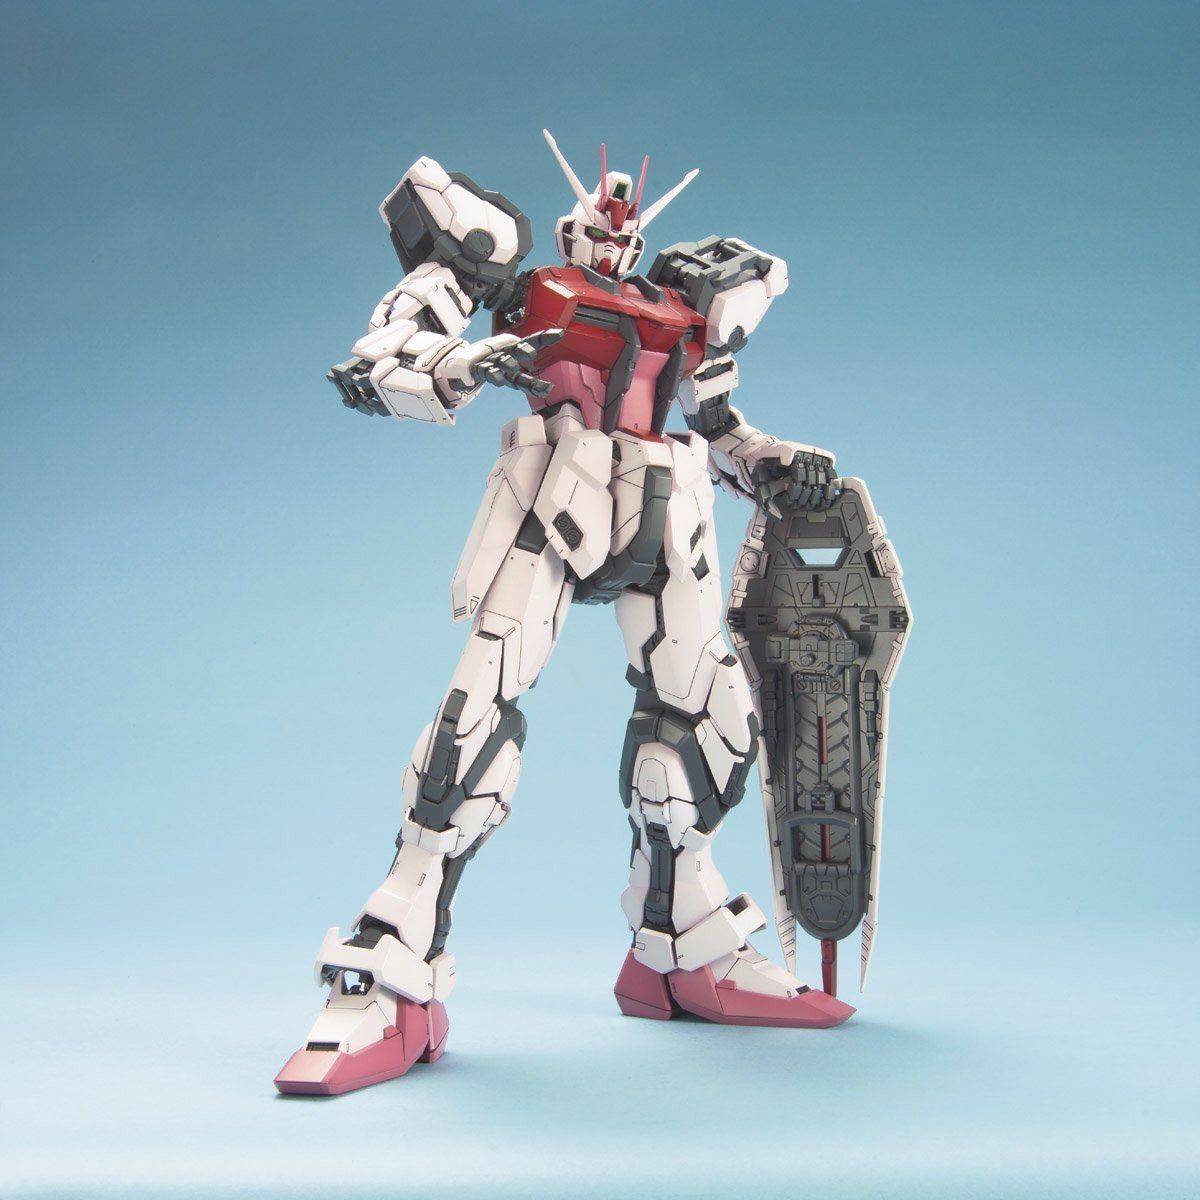 MBF-02 Strike Rouge + FX-550 Skygrasper Mobile Suit Gundam Seed Destiny PG 160 Scale Model Kit (2)